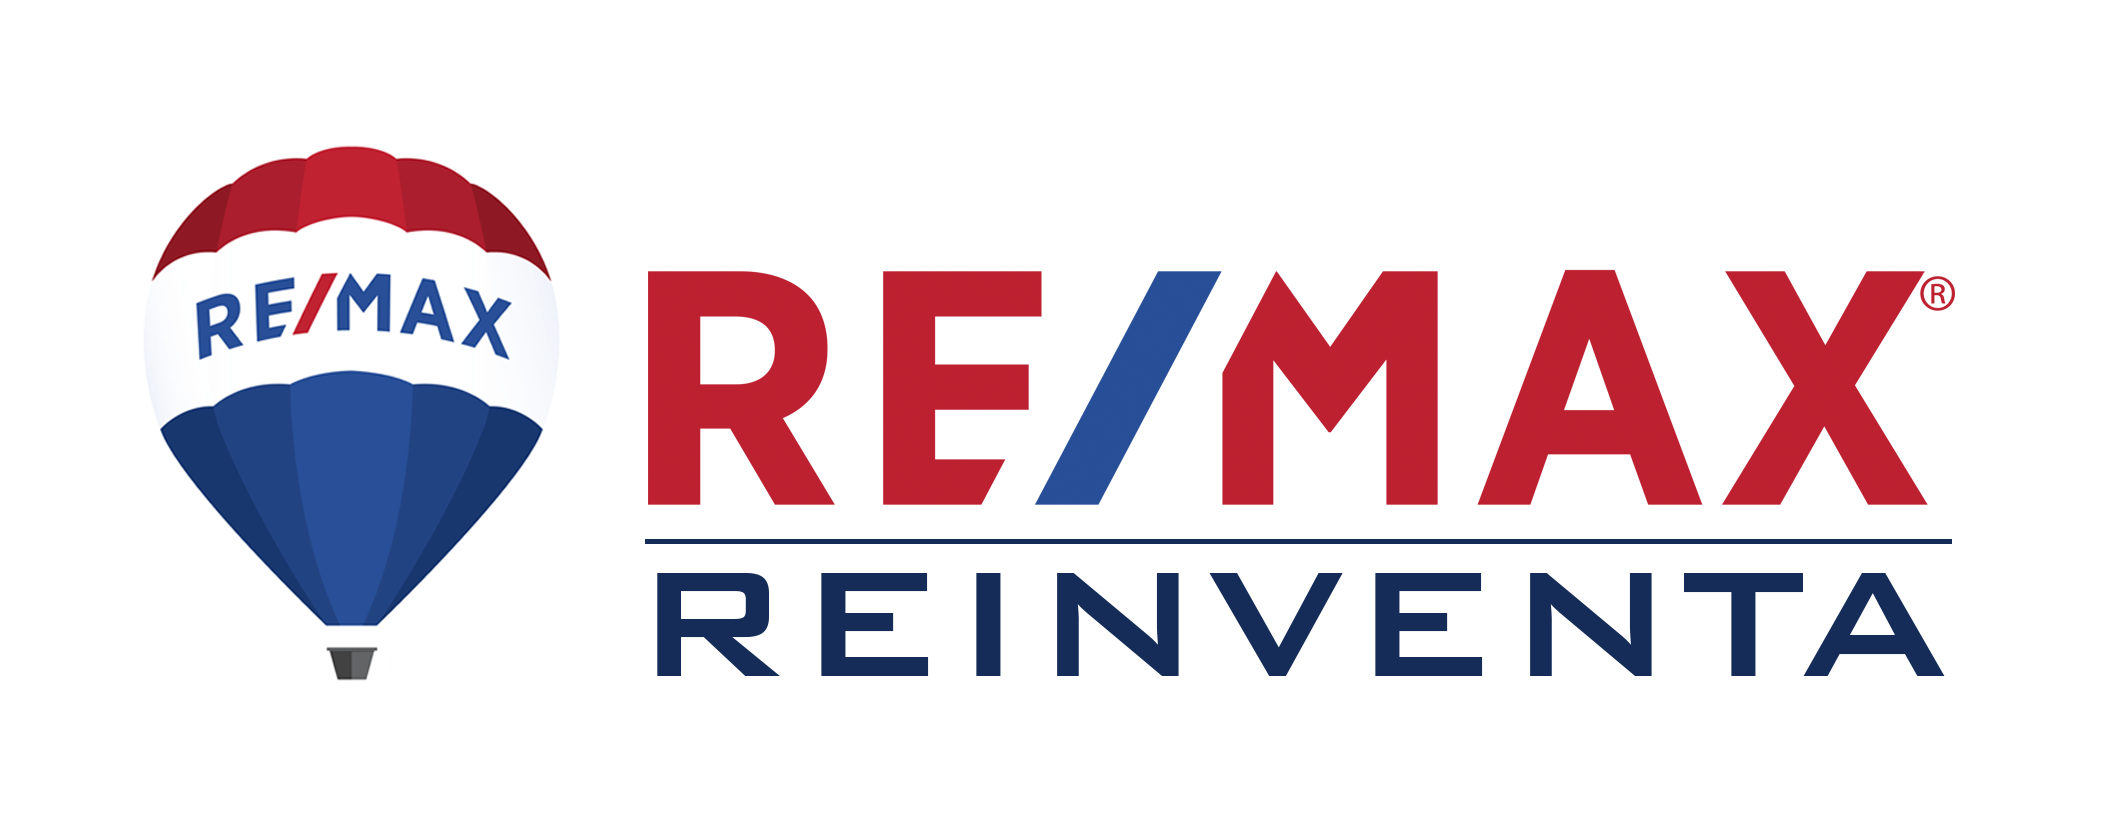 Remax Reinventa-Remax Reinventa